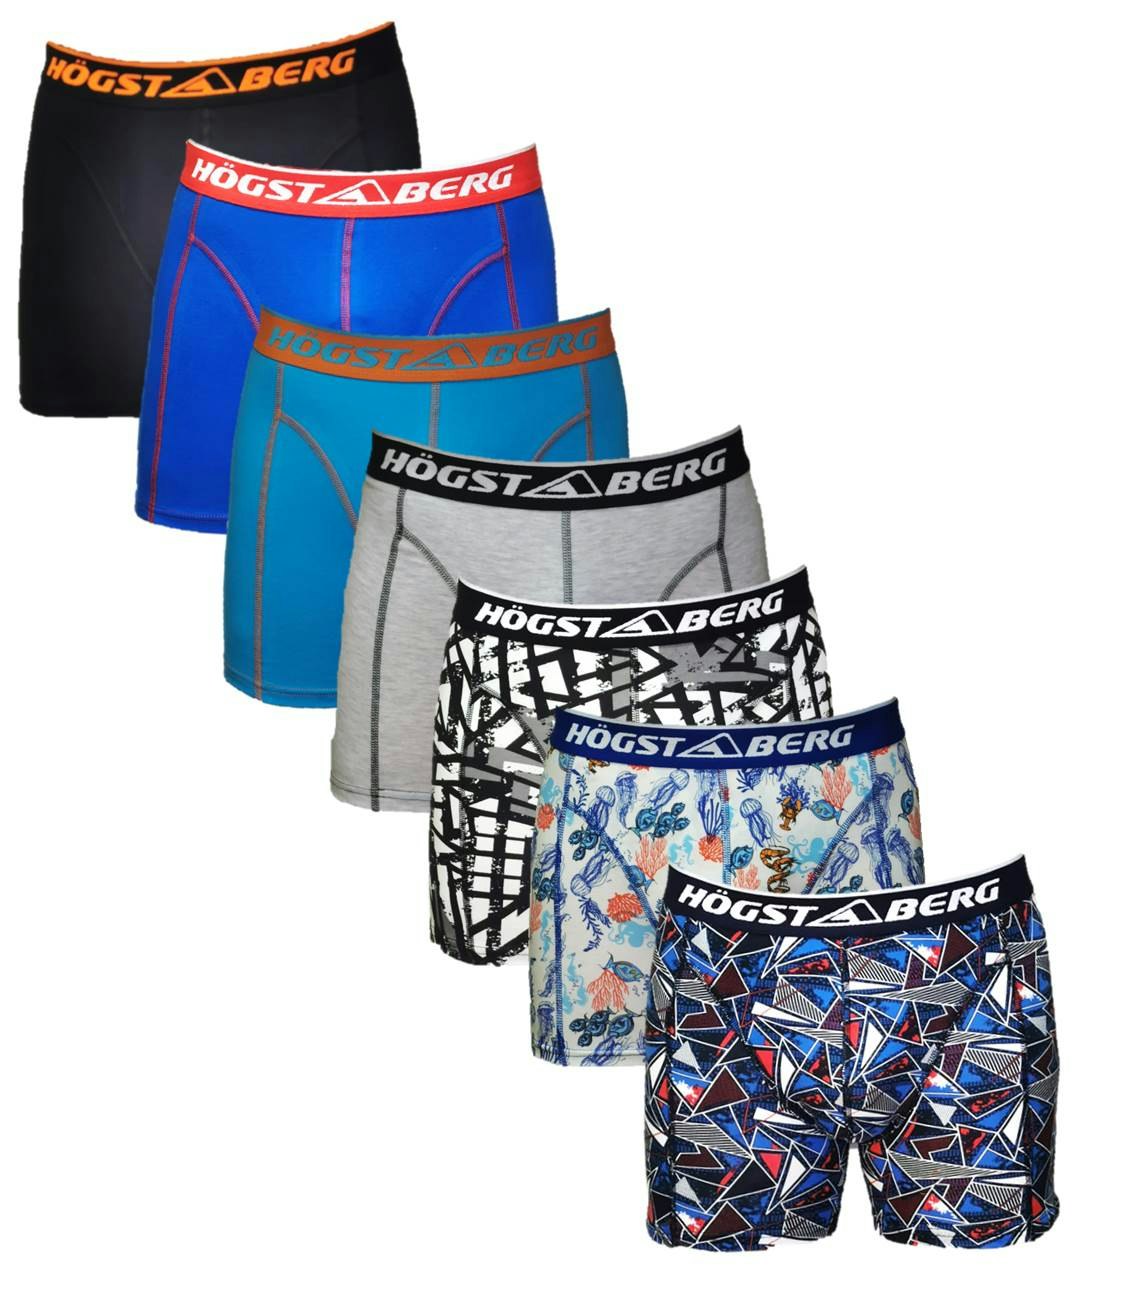 Köp Billiga Boxer Kalsonger | Storpack |Herr| Flerpack | Underkläder -  Högsta kvalitets underkläder och Strumpor